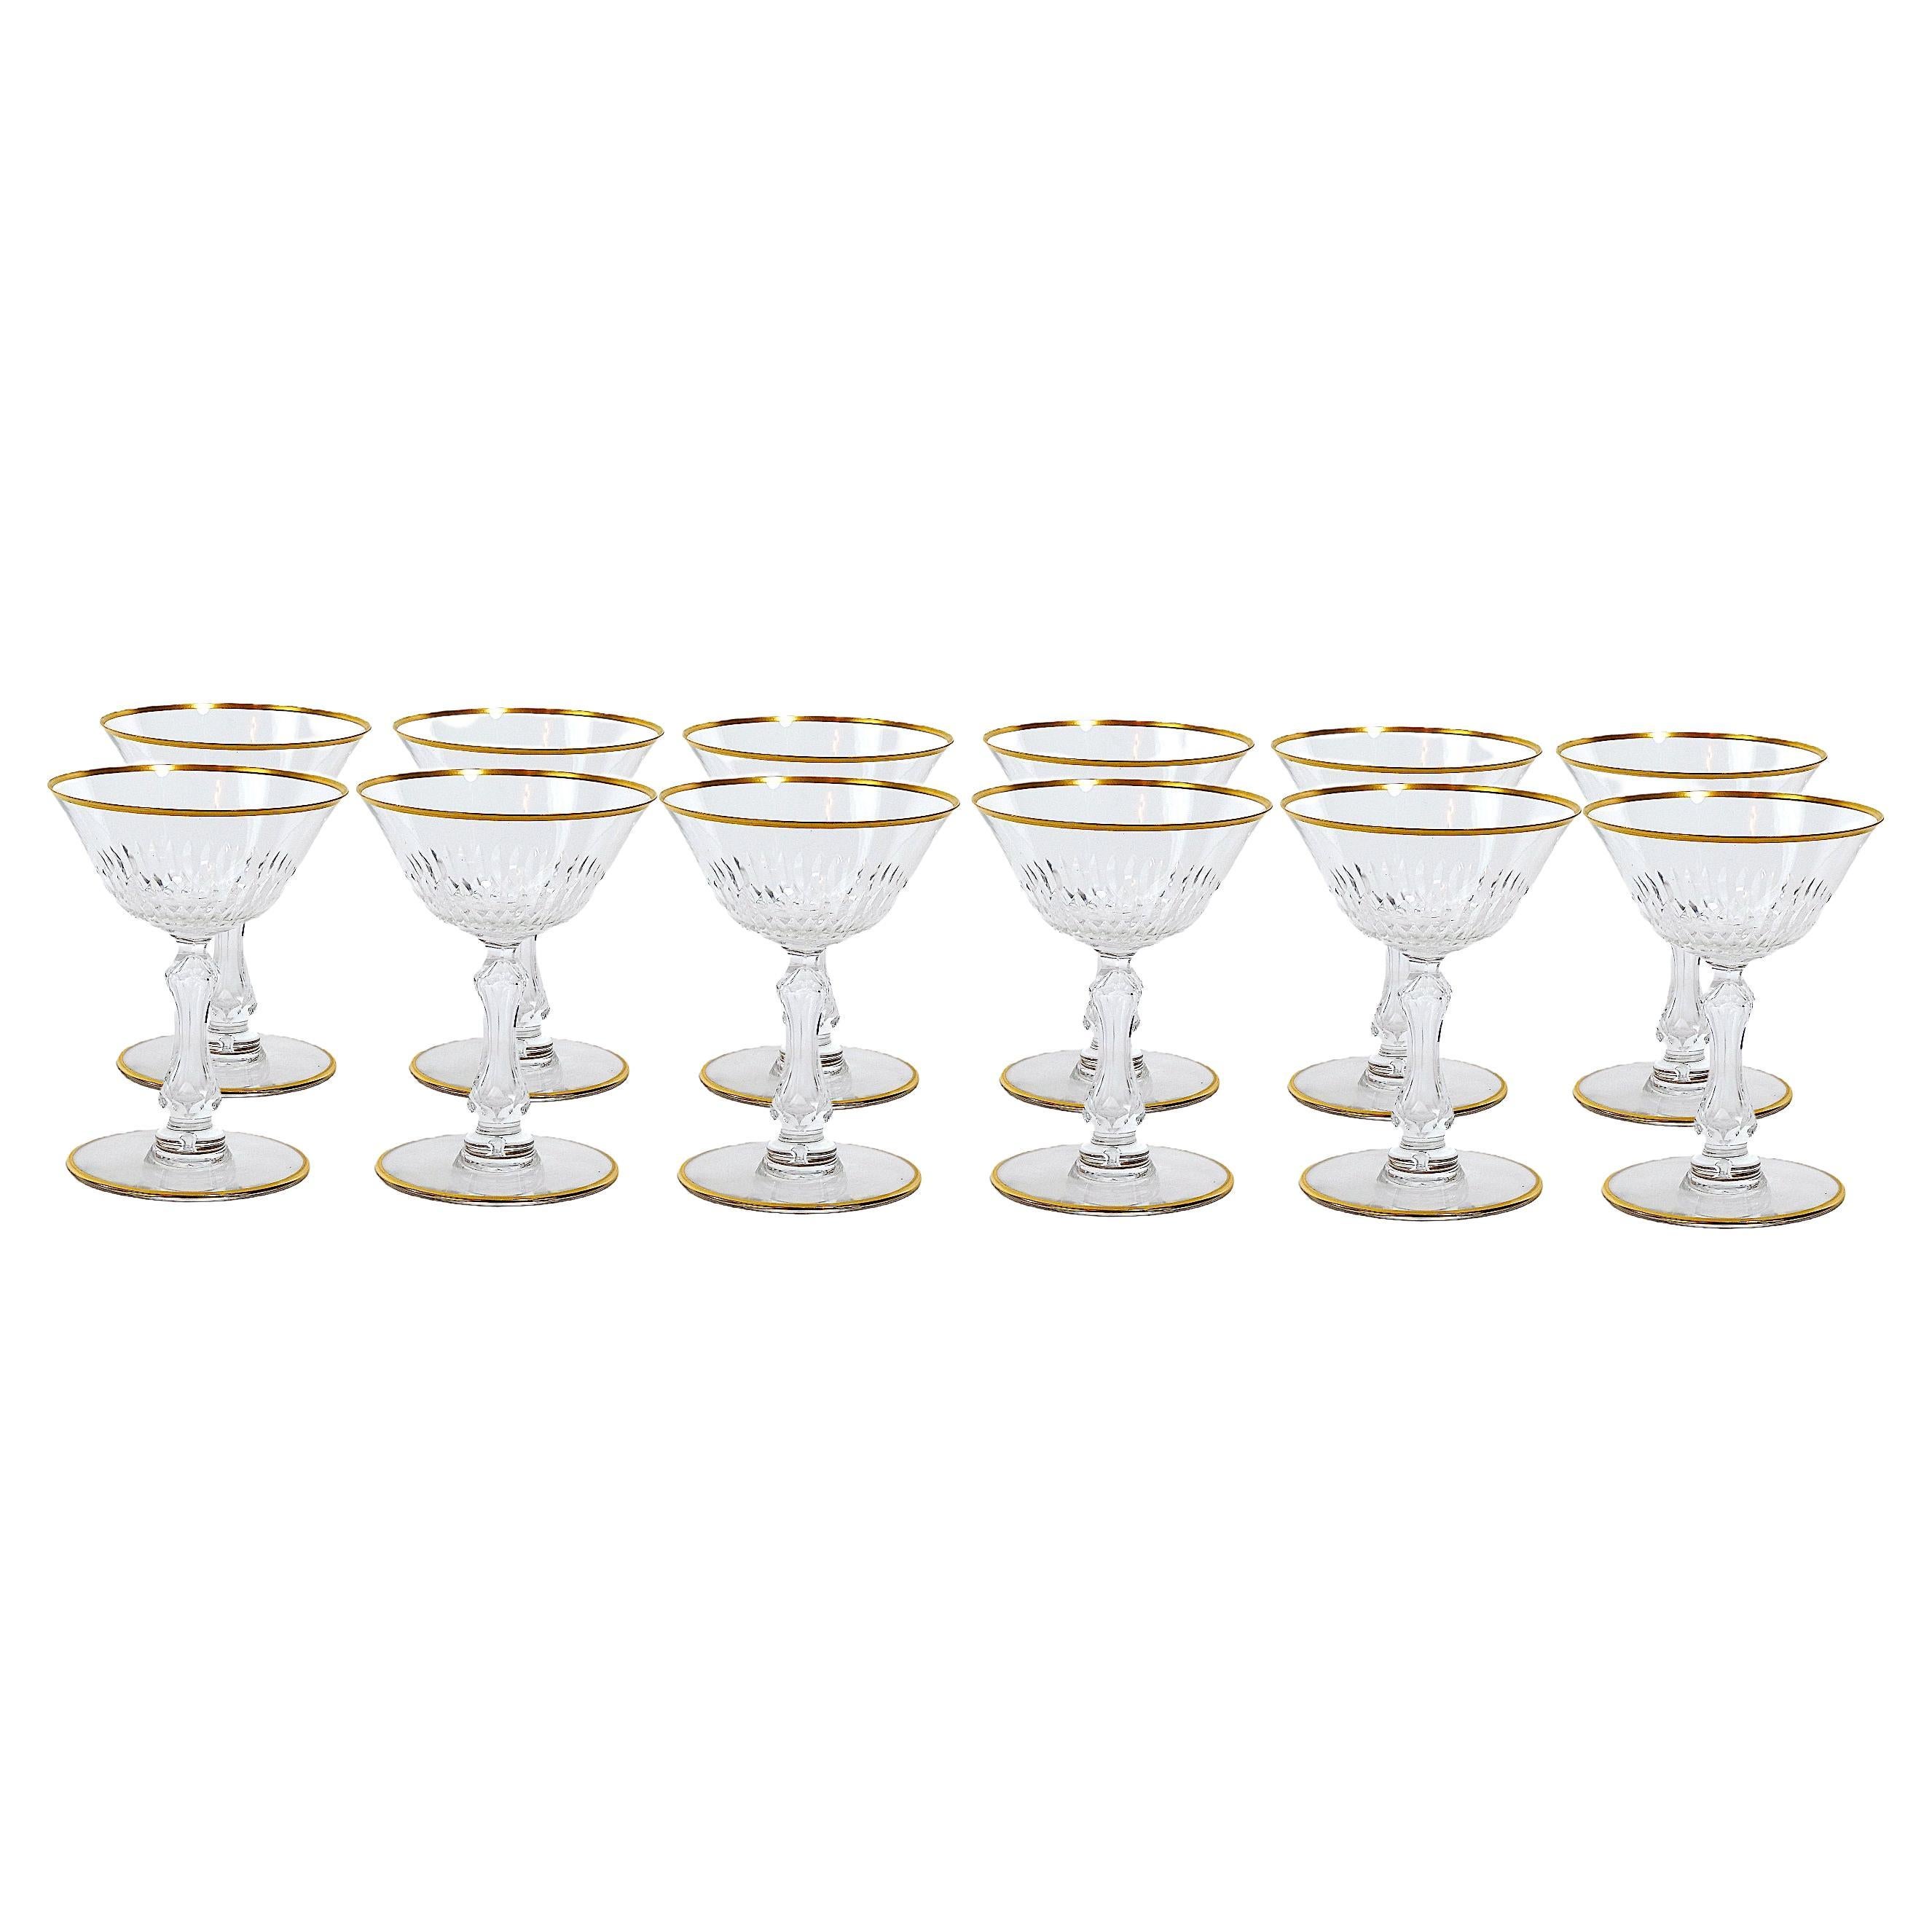 Service de verrerie de table en cristal doré Saint Louis / 12 personnes